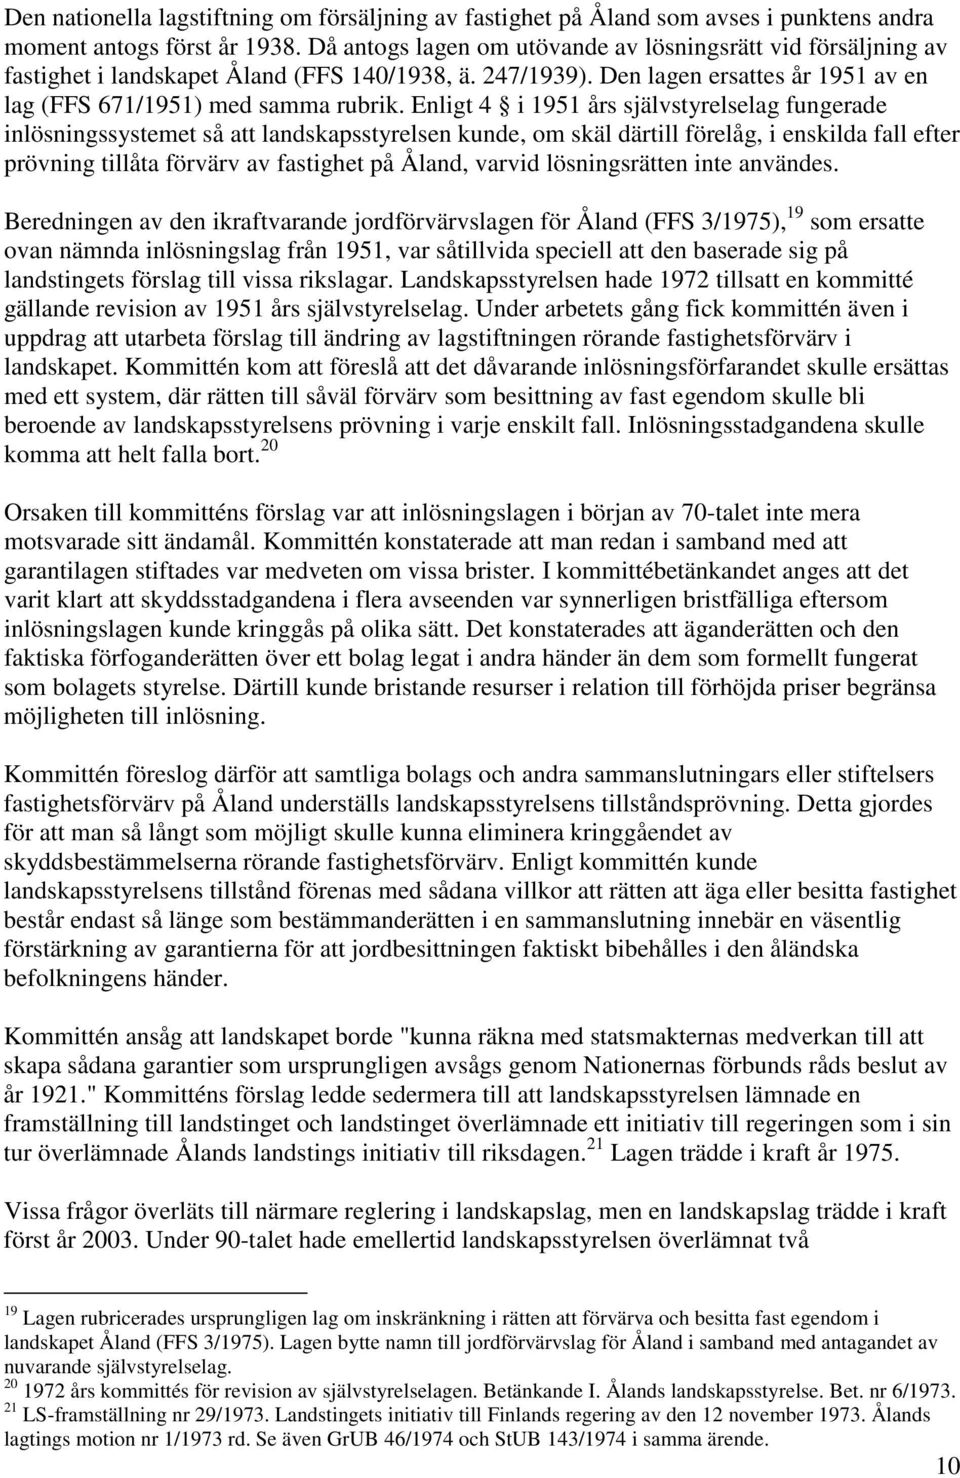 Enligt 4 i 1951 års självstyrelselag fungerade inlösningssystemet så att landskapsstyrelsen kunde, om skäl därtill förelåg, i enskilda fall efter prövning tillåta förvärv av fastighet på Åland,